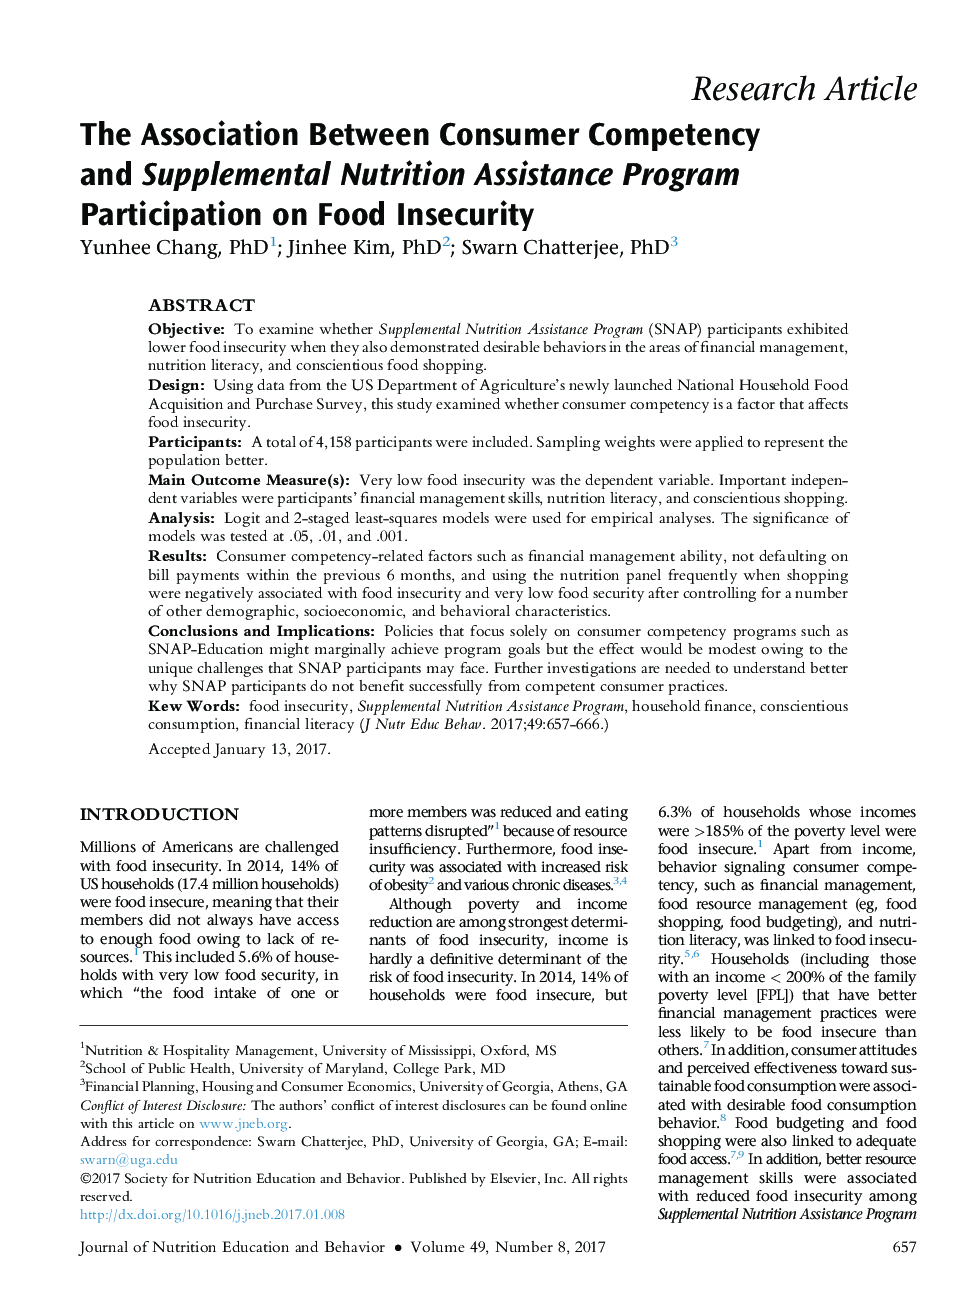 ارتباط بین توانایی مصرف کنندگان و مشارکت برنامه کمک رسانی غذایی اضافی در عدم امنیت غذایی 